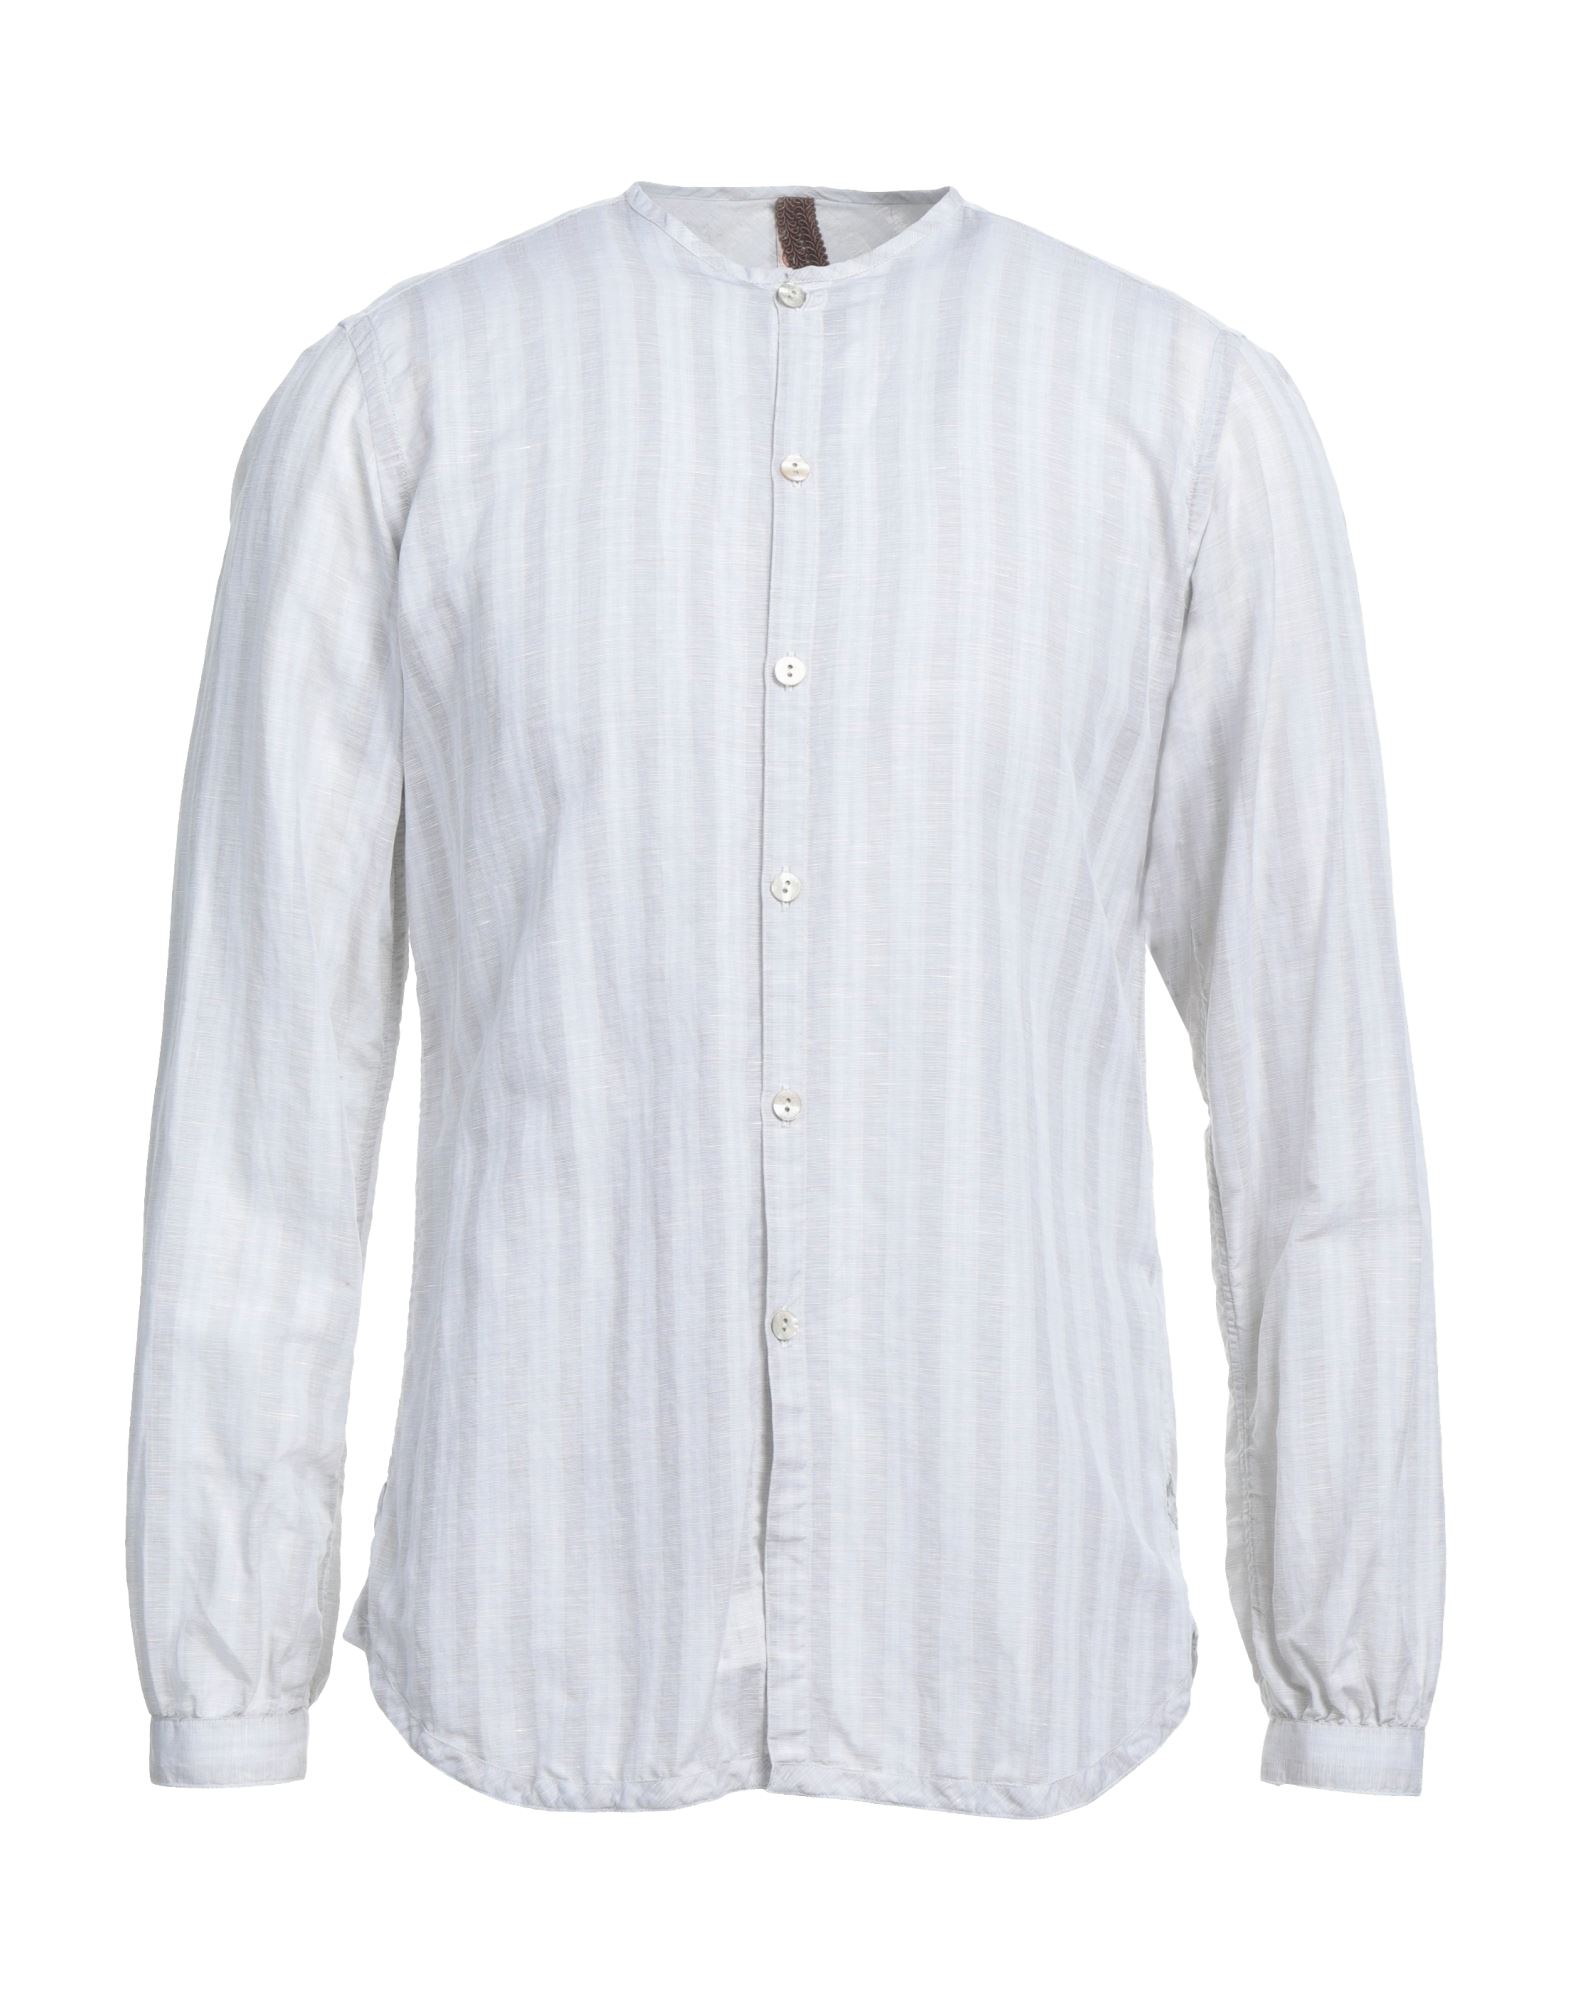 Dnl Man Shirt Light Grey Size 15 ½ Cotton, Linen